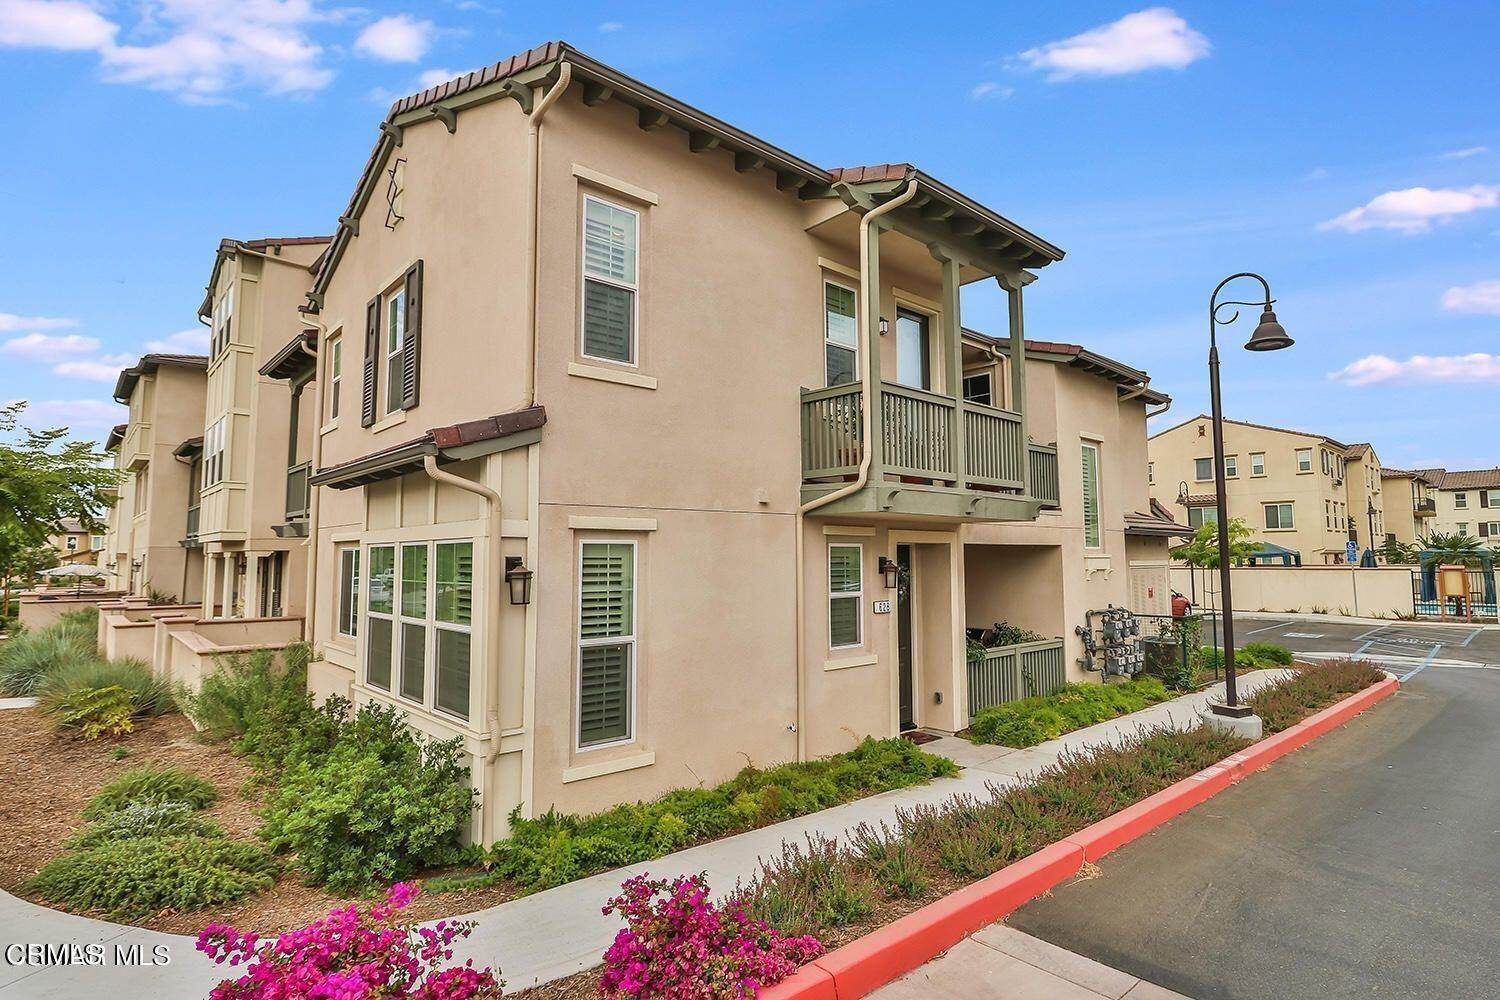 3. Condominiums at 628 Pioneer Street Camarillo, California 93010 United States